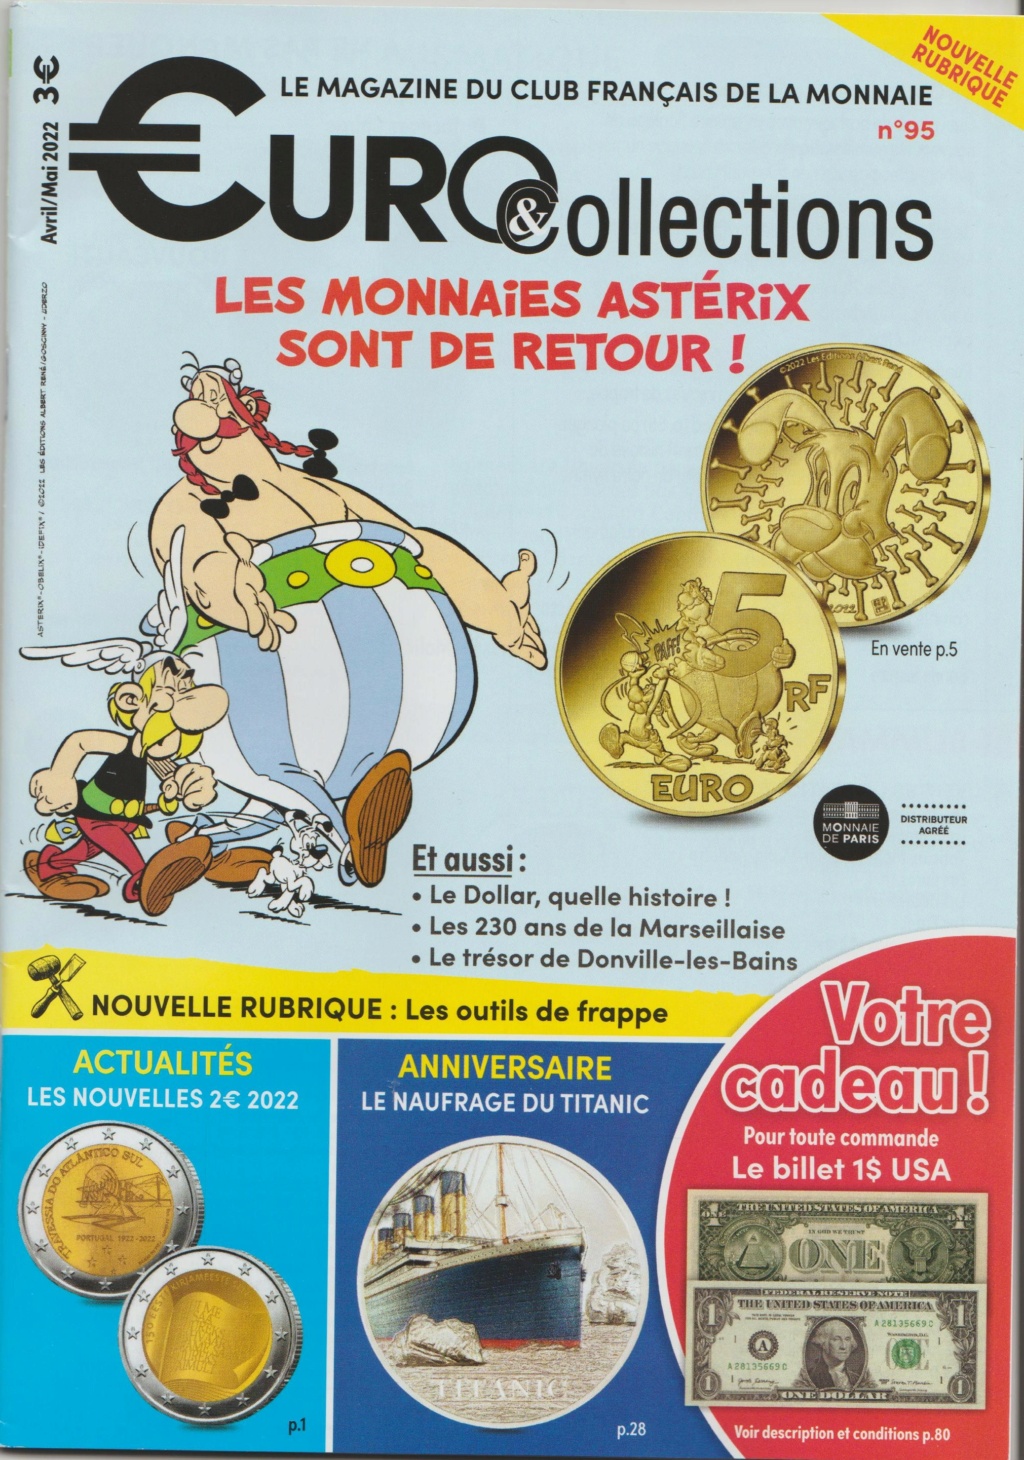 Collectionnez les 12 mini-médailles exclusives avec Astérix:  Monnaie de Paris - Page 3 Tresor10